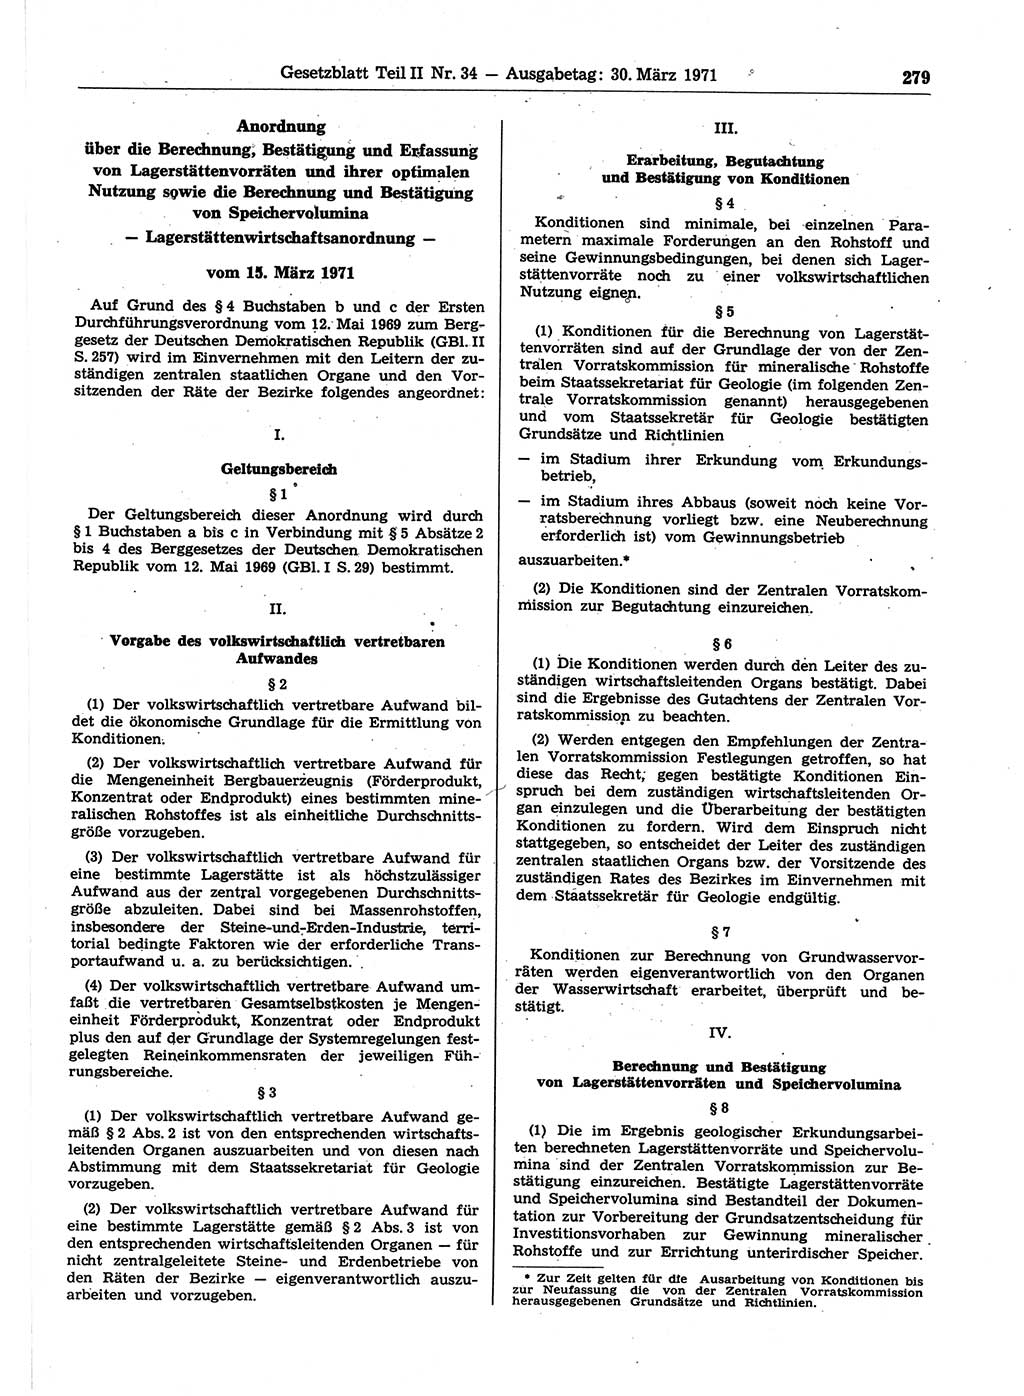 Gesetzblatt (GBl.) der Deutschen Demokratischen Republik (DDR) Teil ⅠⅠ 1971, Seite 279 (GBl. DDR ⅠⅠ 1971, S. 279)